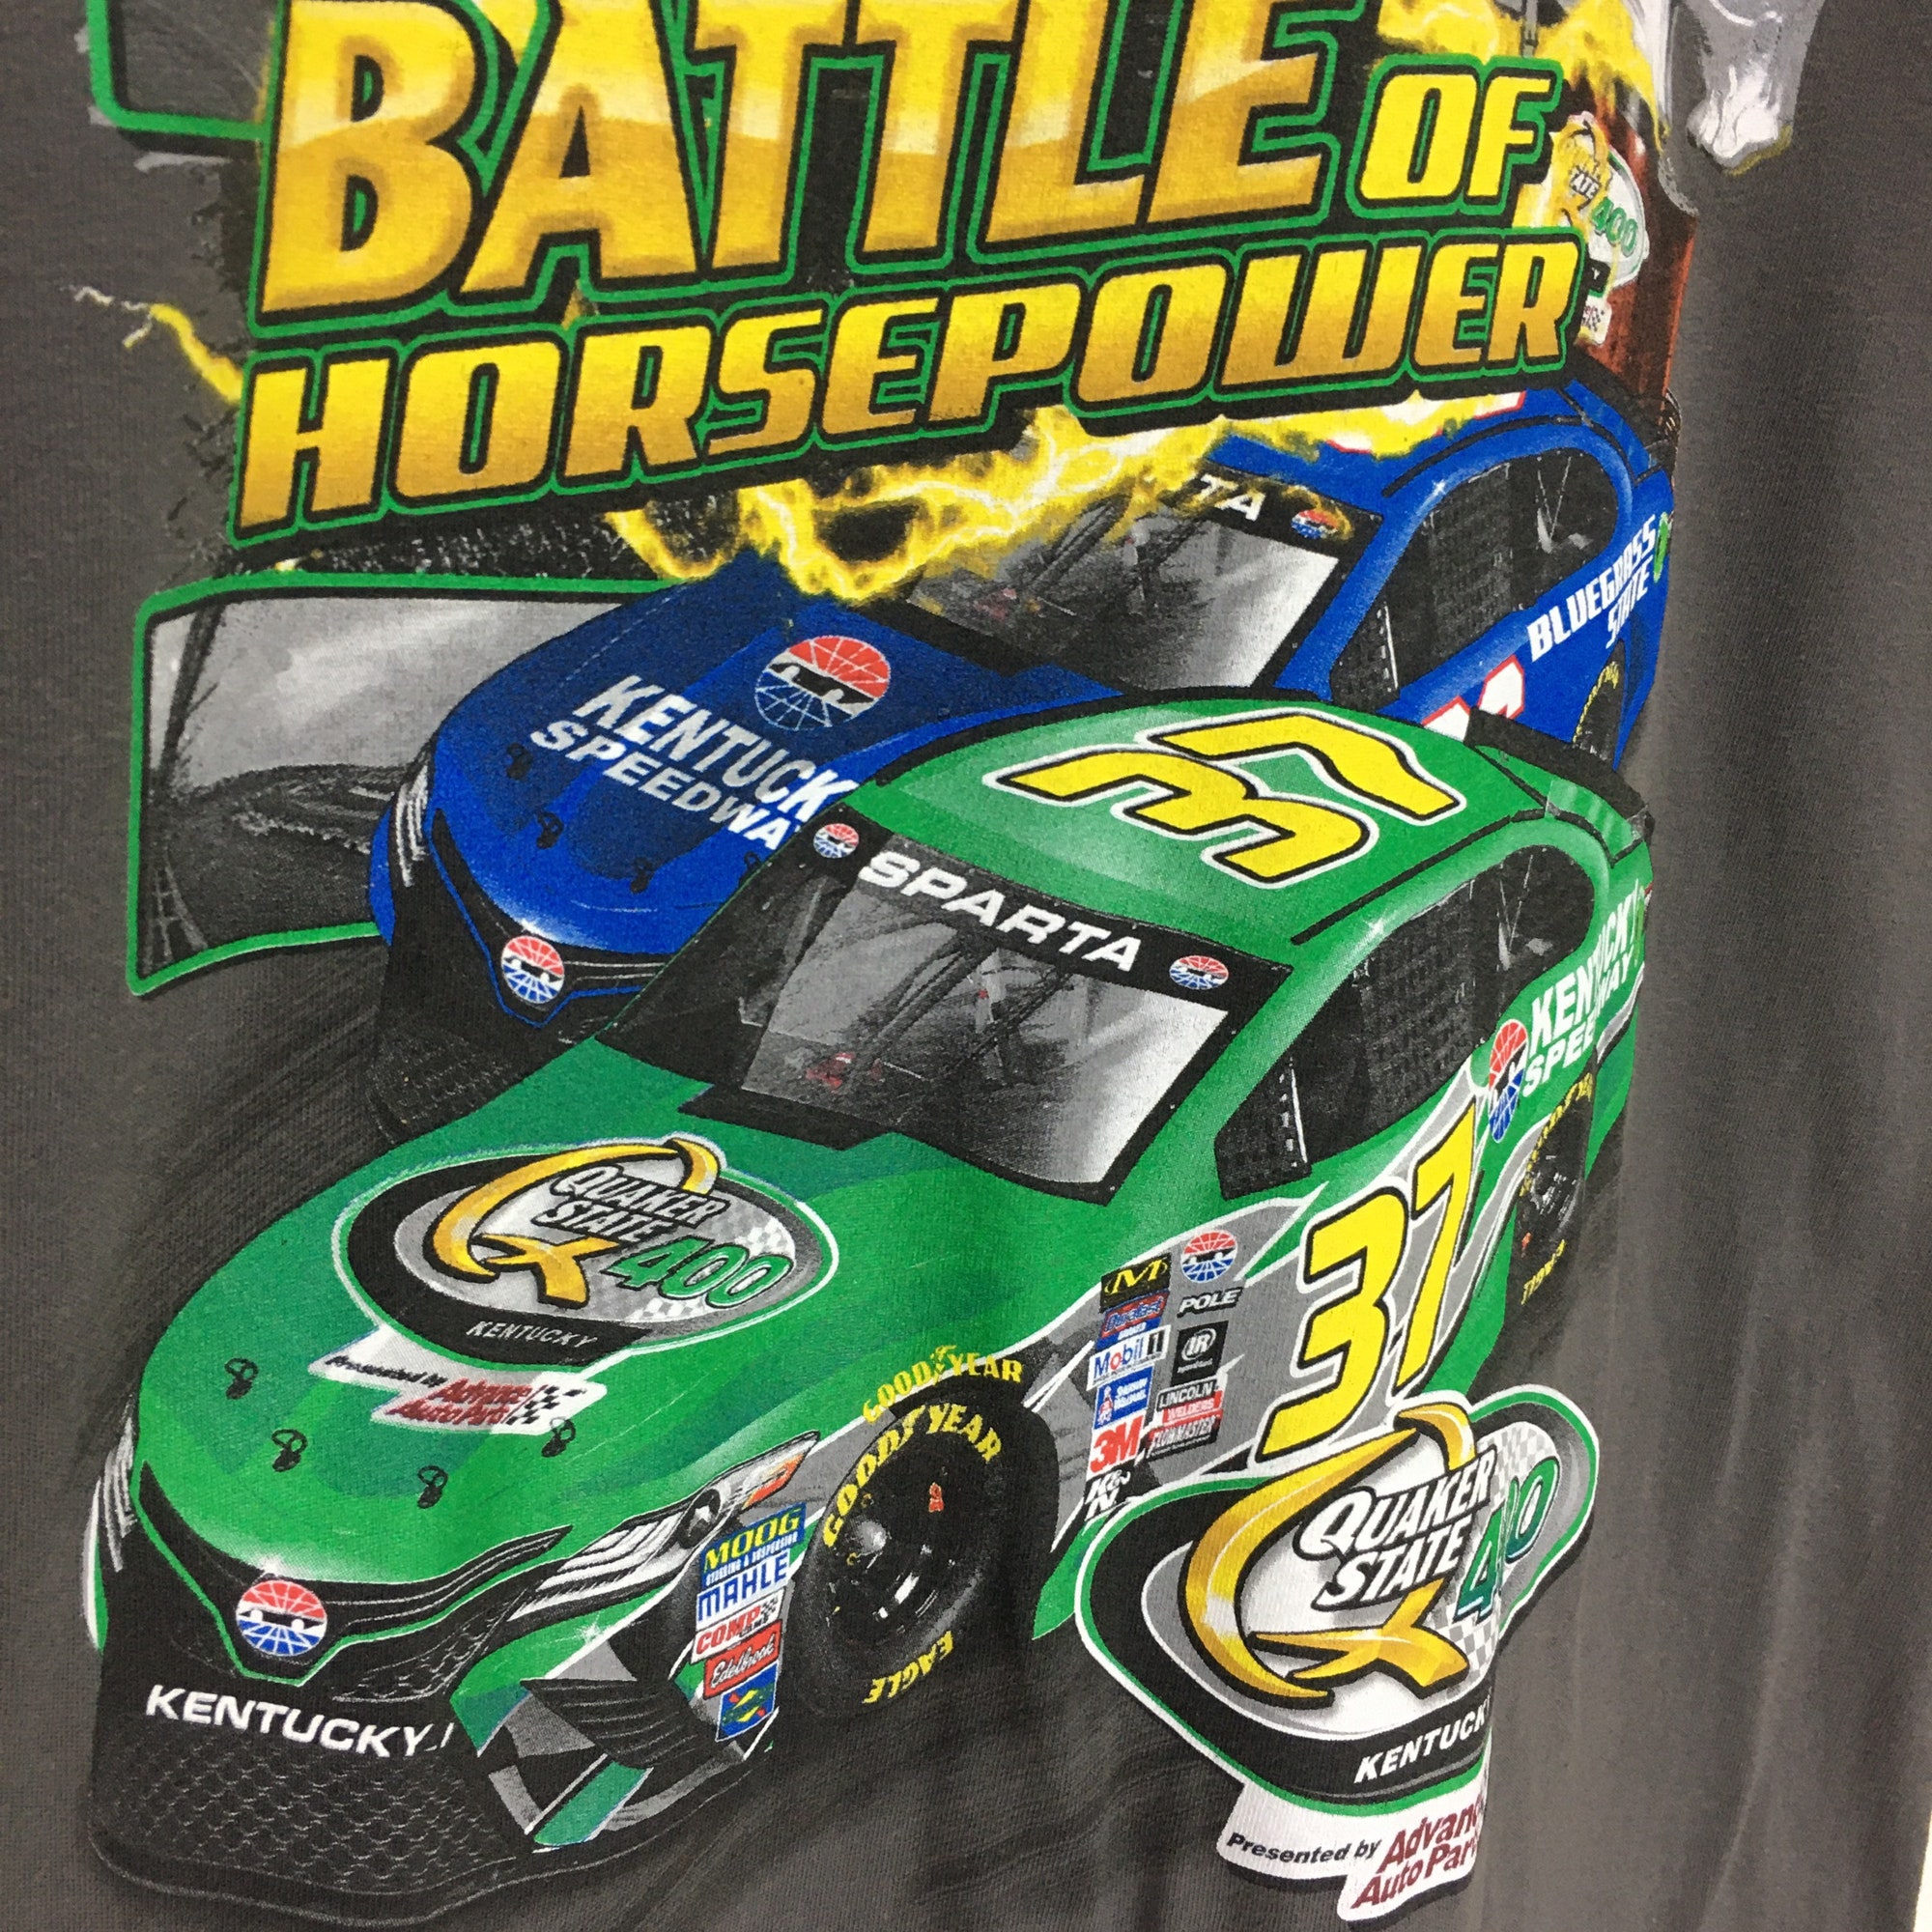 Kentucky Speedway Battle Of Horsepower Car Racing Motorsports T-Shirt